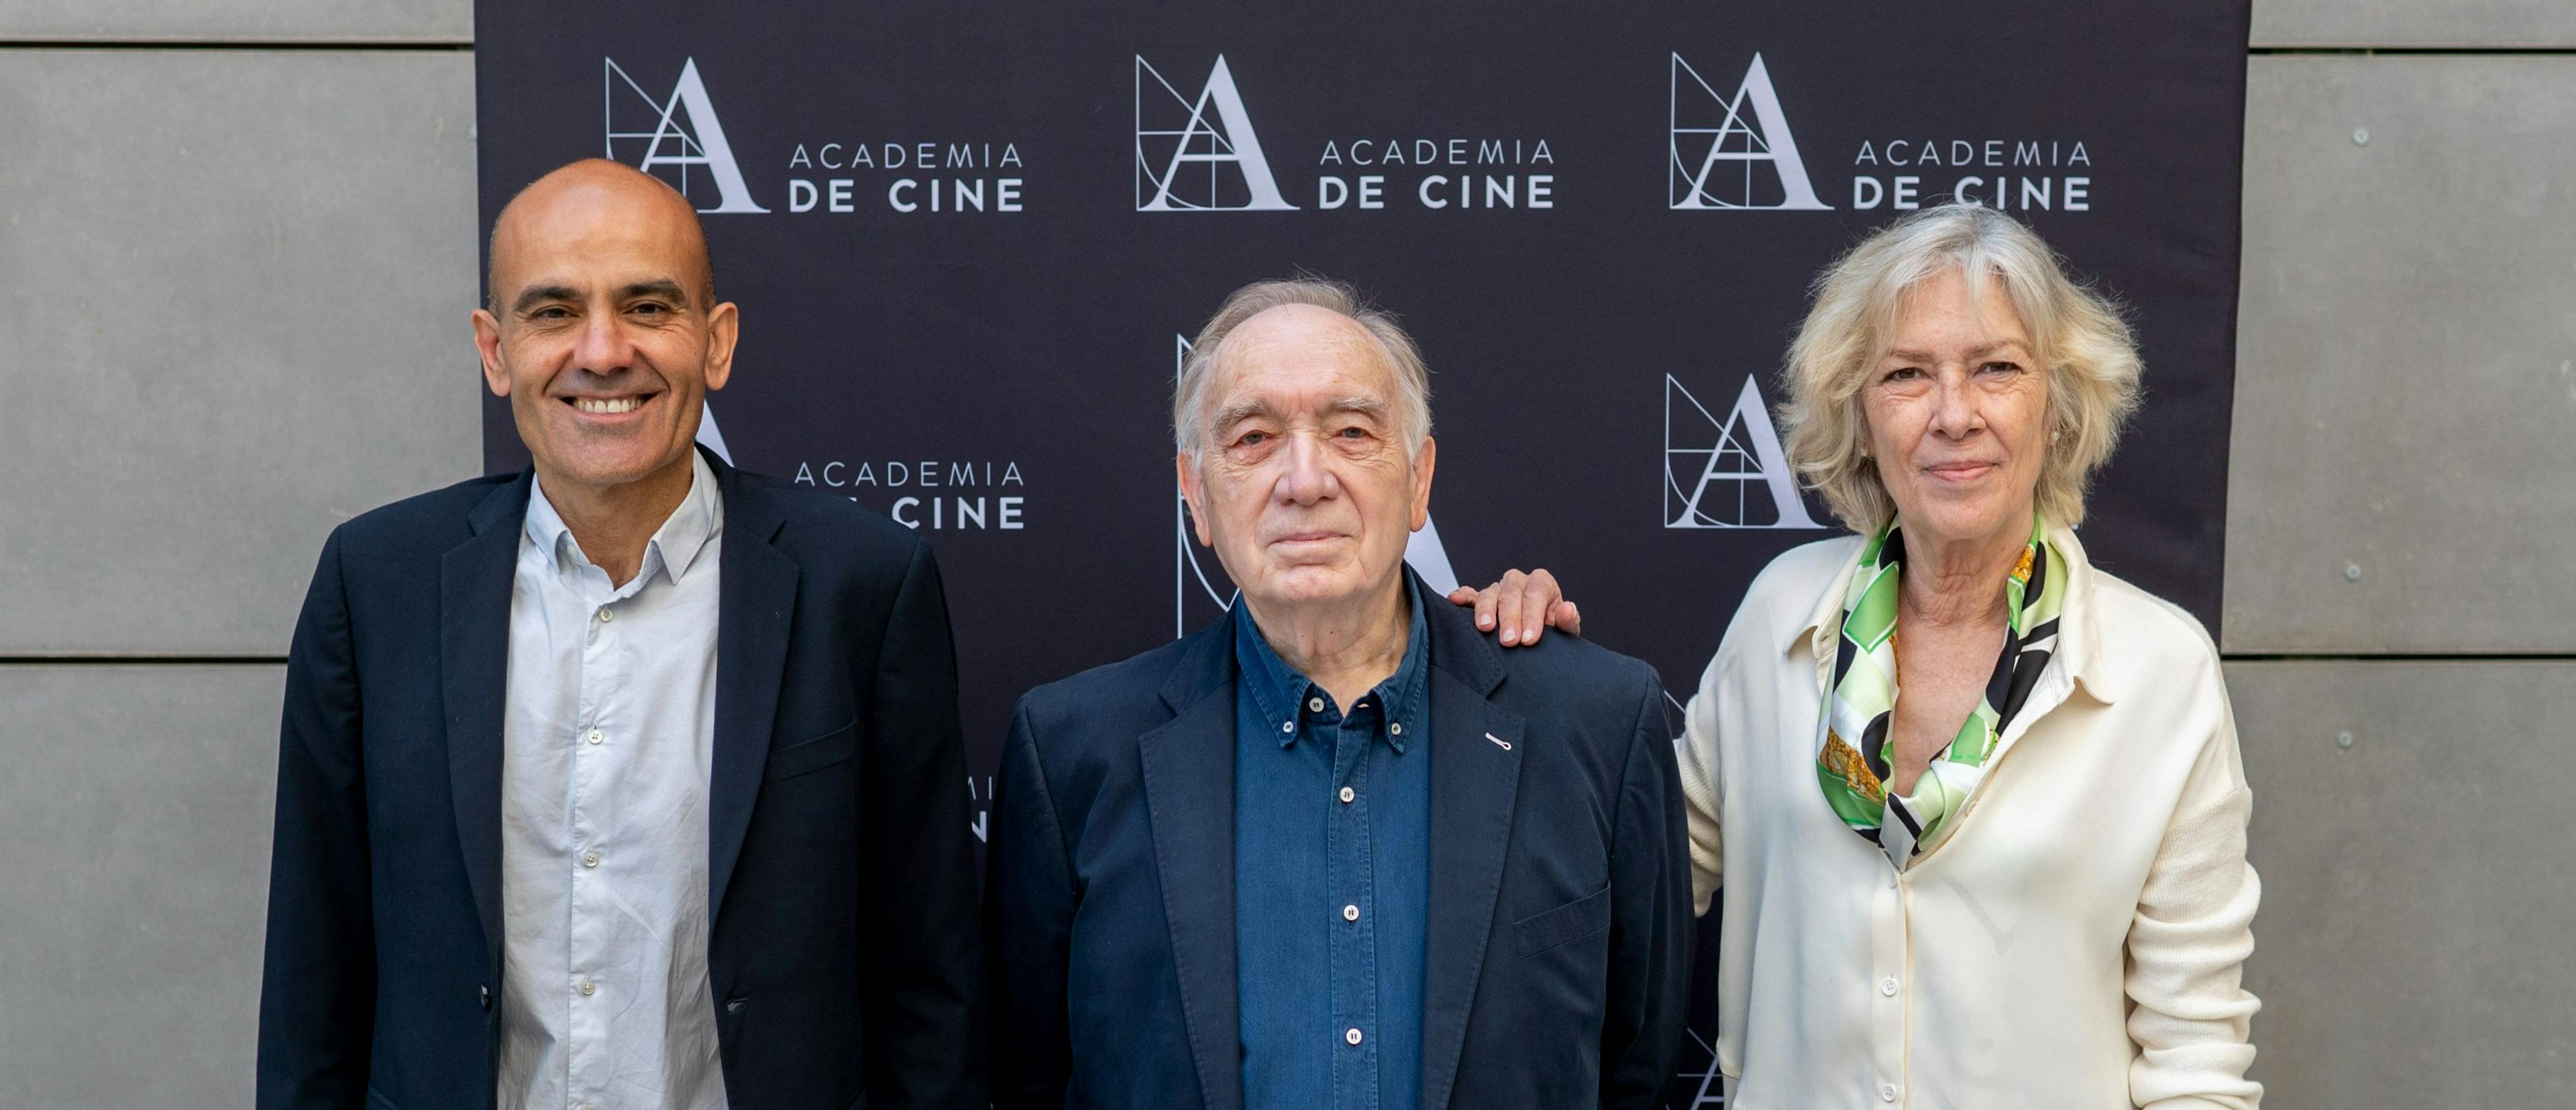 Fernando Méndez-Leite, Rafael Portela (i) y Susi Sánchez (d), presidente y vicepresidentes de la Academia de Cine, el día de su elección en junio de 2022